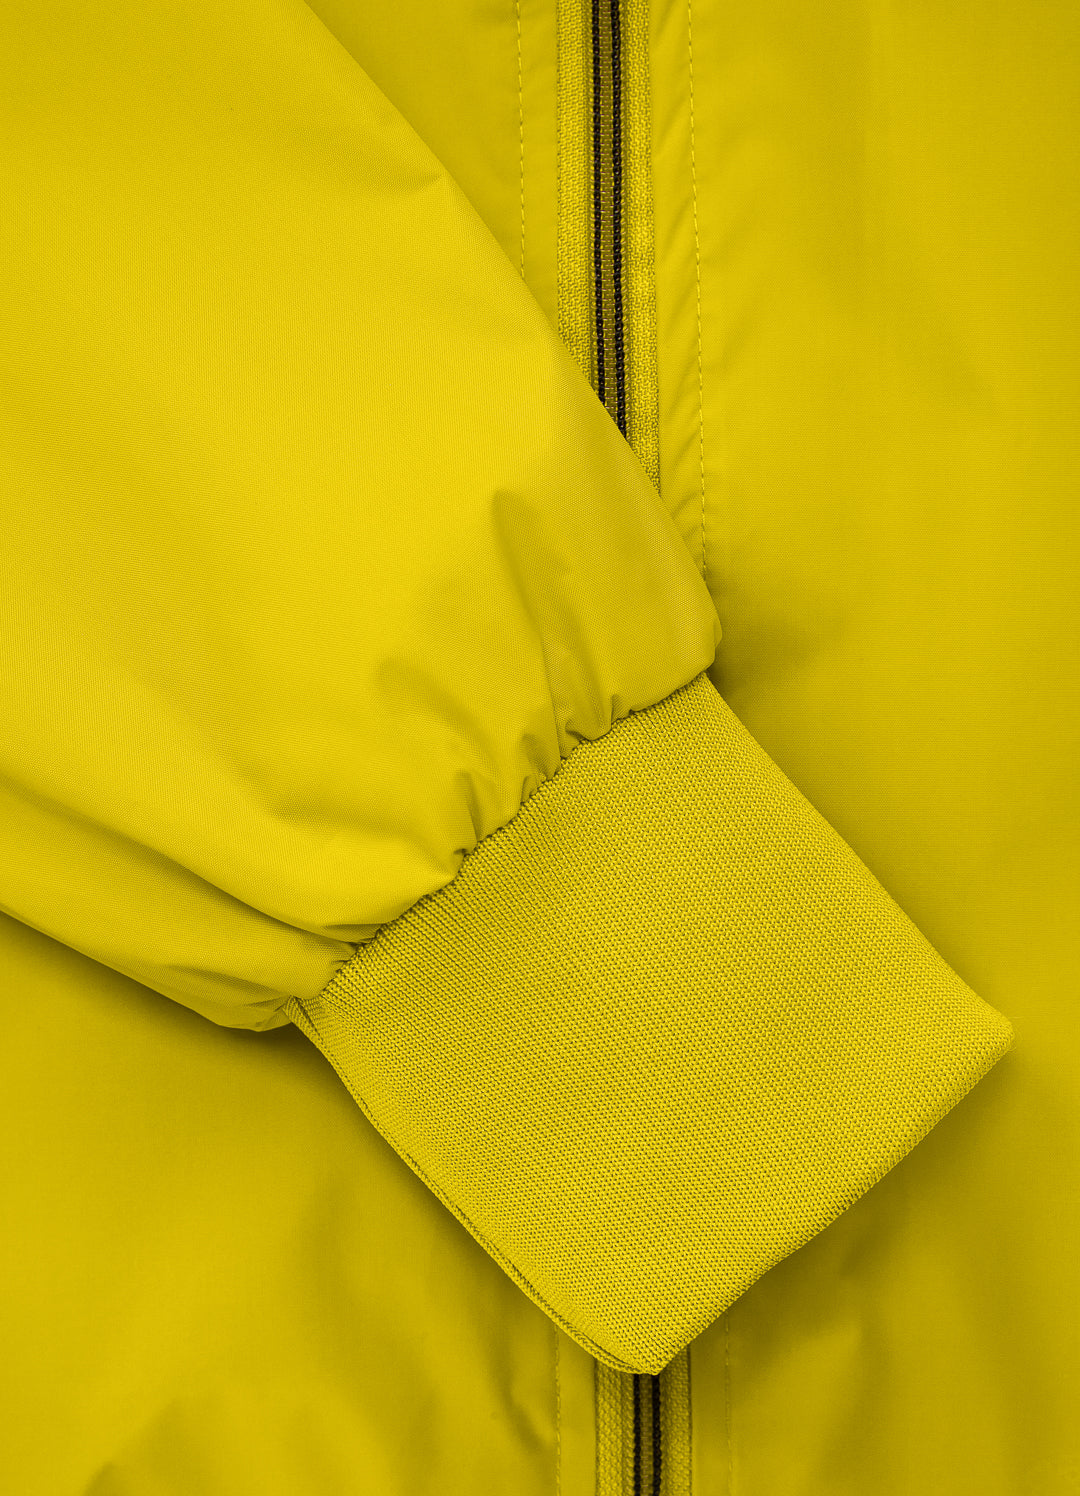 ATHLETIC Yellow Jacket.